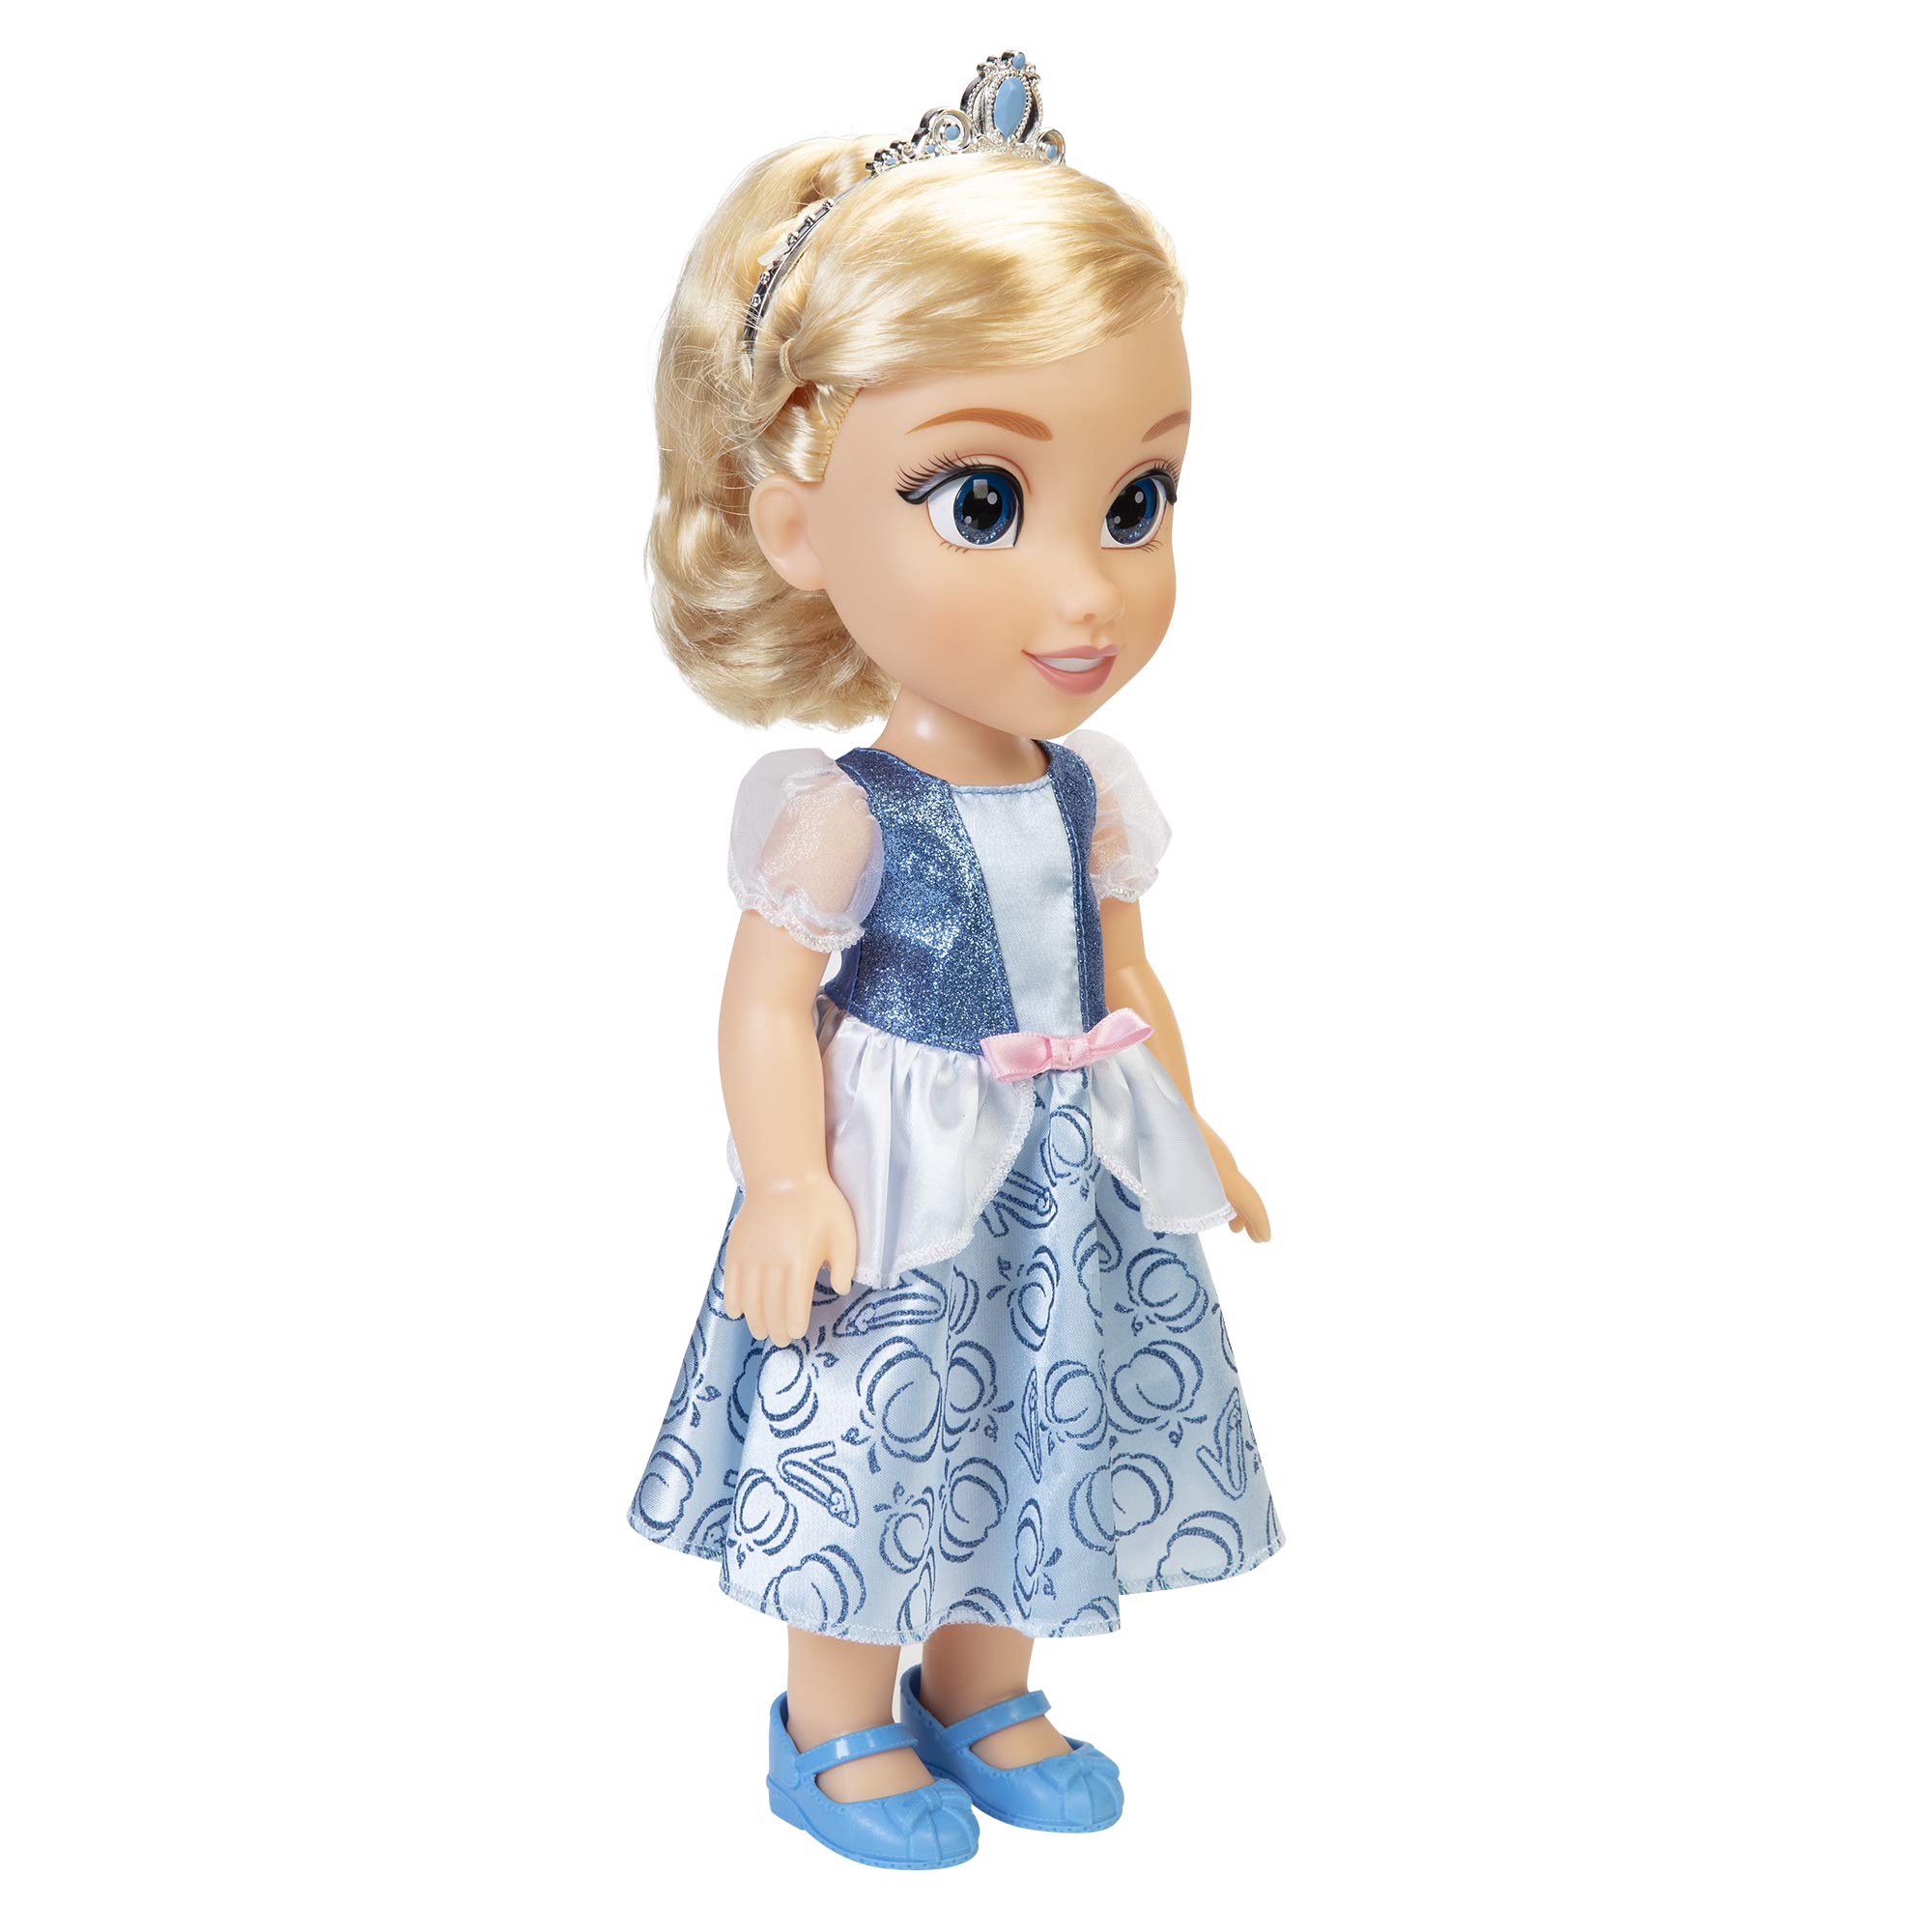 Disney Princess My Friend Cinderella Doll 14